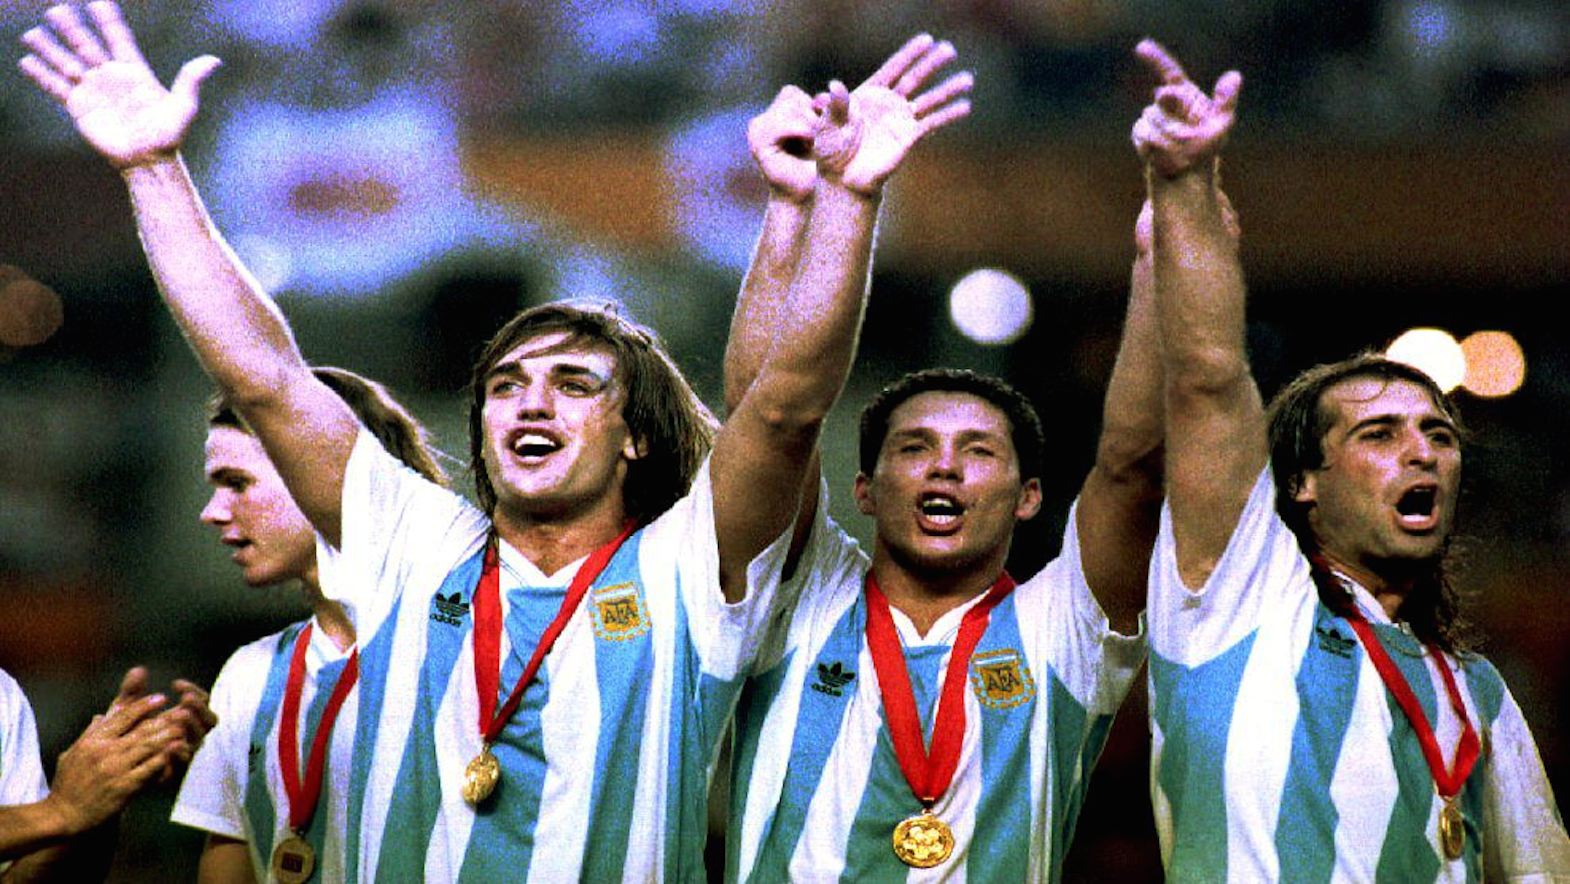 Gabriel Batistuta, Diego Simeone, y Leo Rodríguez celebran la victoria en la Copa América, Ecuador 1993. Los argentinos derrotaron a México 2-1. (Crédito: TIM CLARY/AFP/Getty Images)